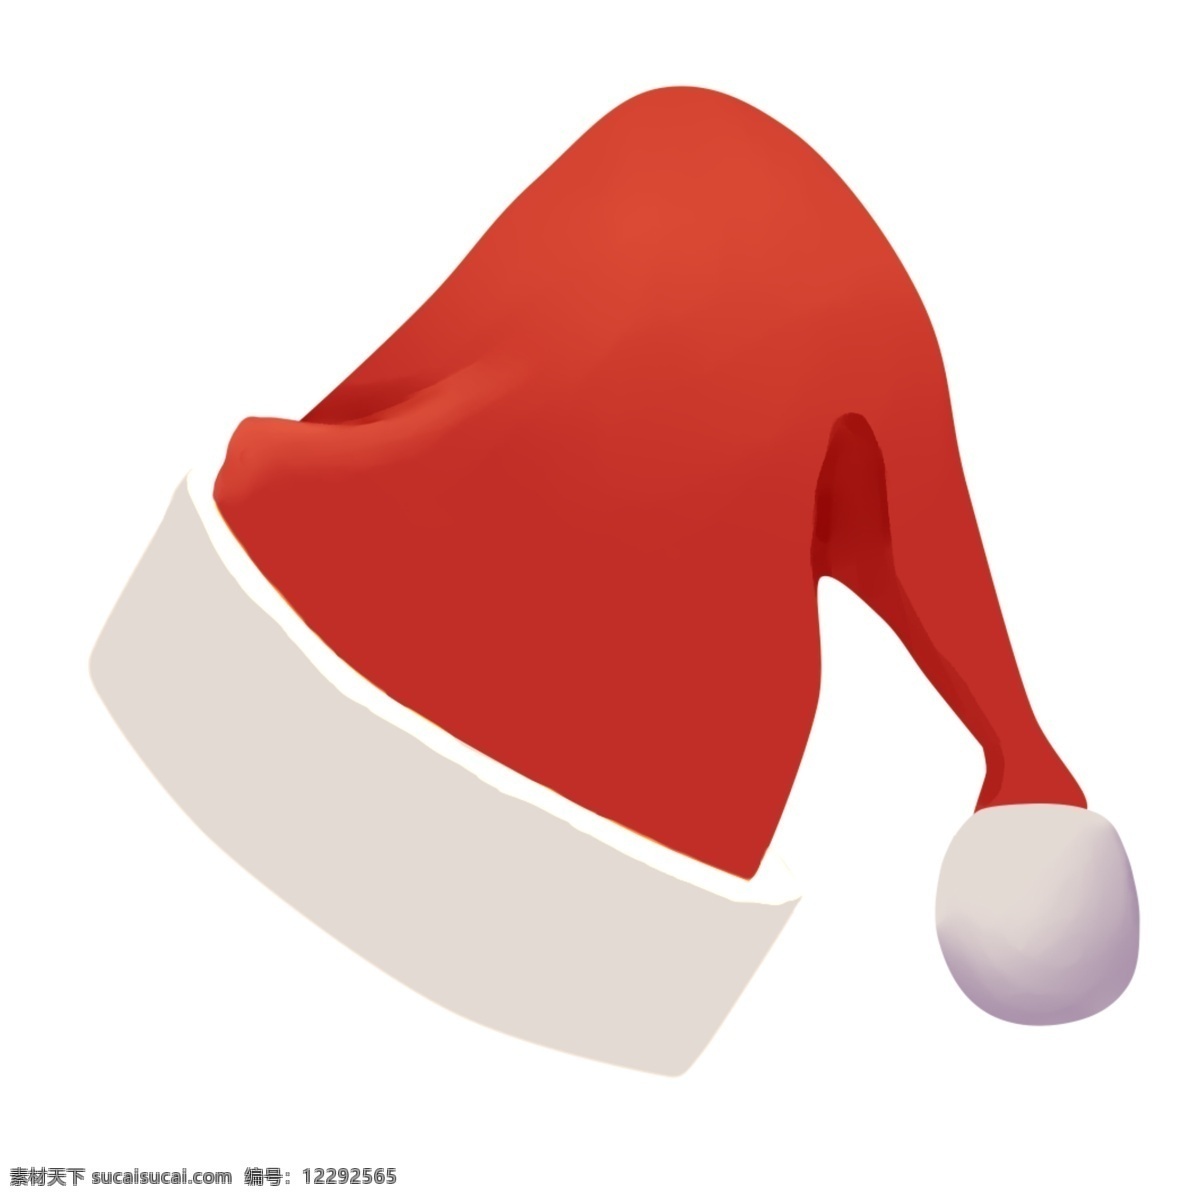 手绘 圣诞节 帽子 插画 圣诞节帽子 愉快的圣诞节 可以 收礼 物 节日 欢庆圣诞节 边框 创意